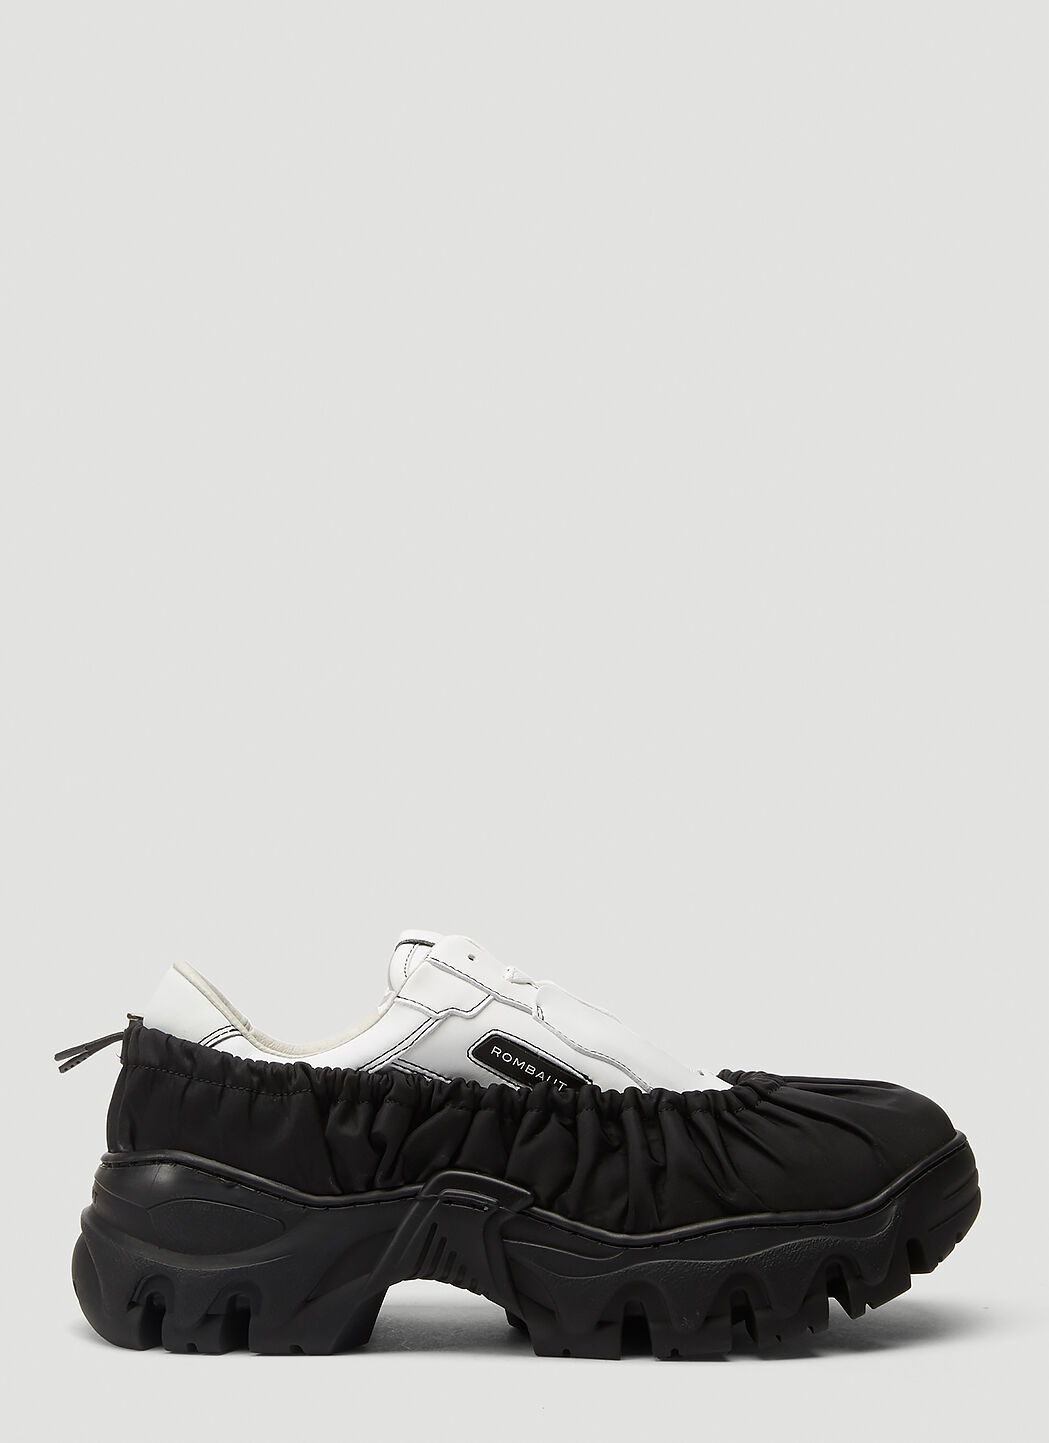 Rombaut Boccaccio II Future Nylon Bag Sneakers Black rmb0244004